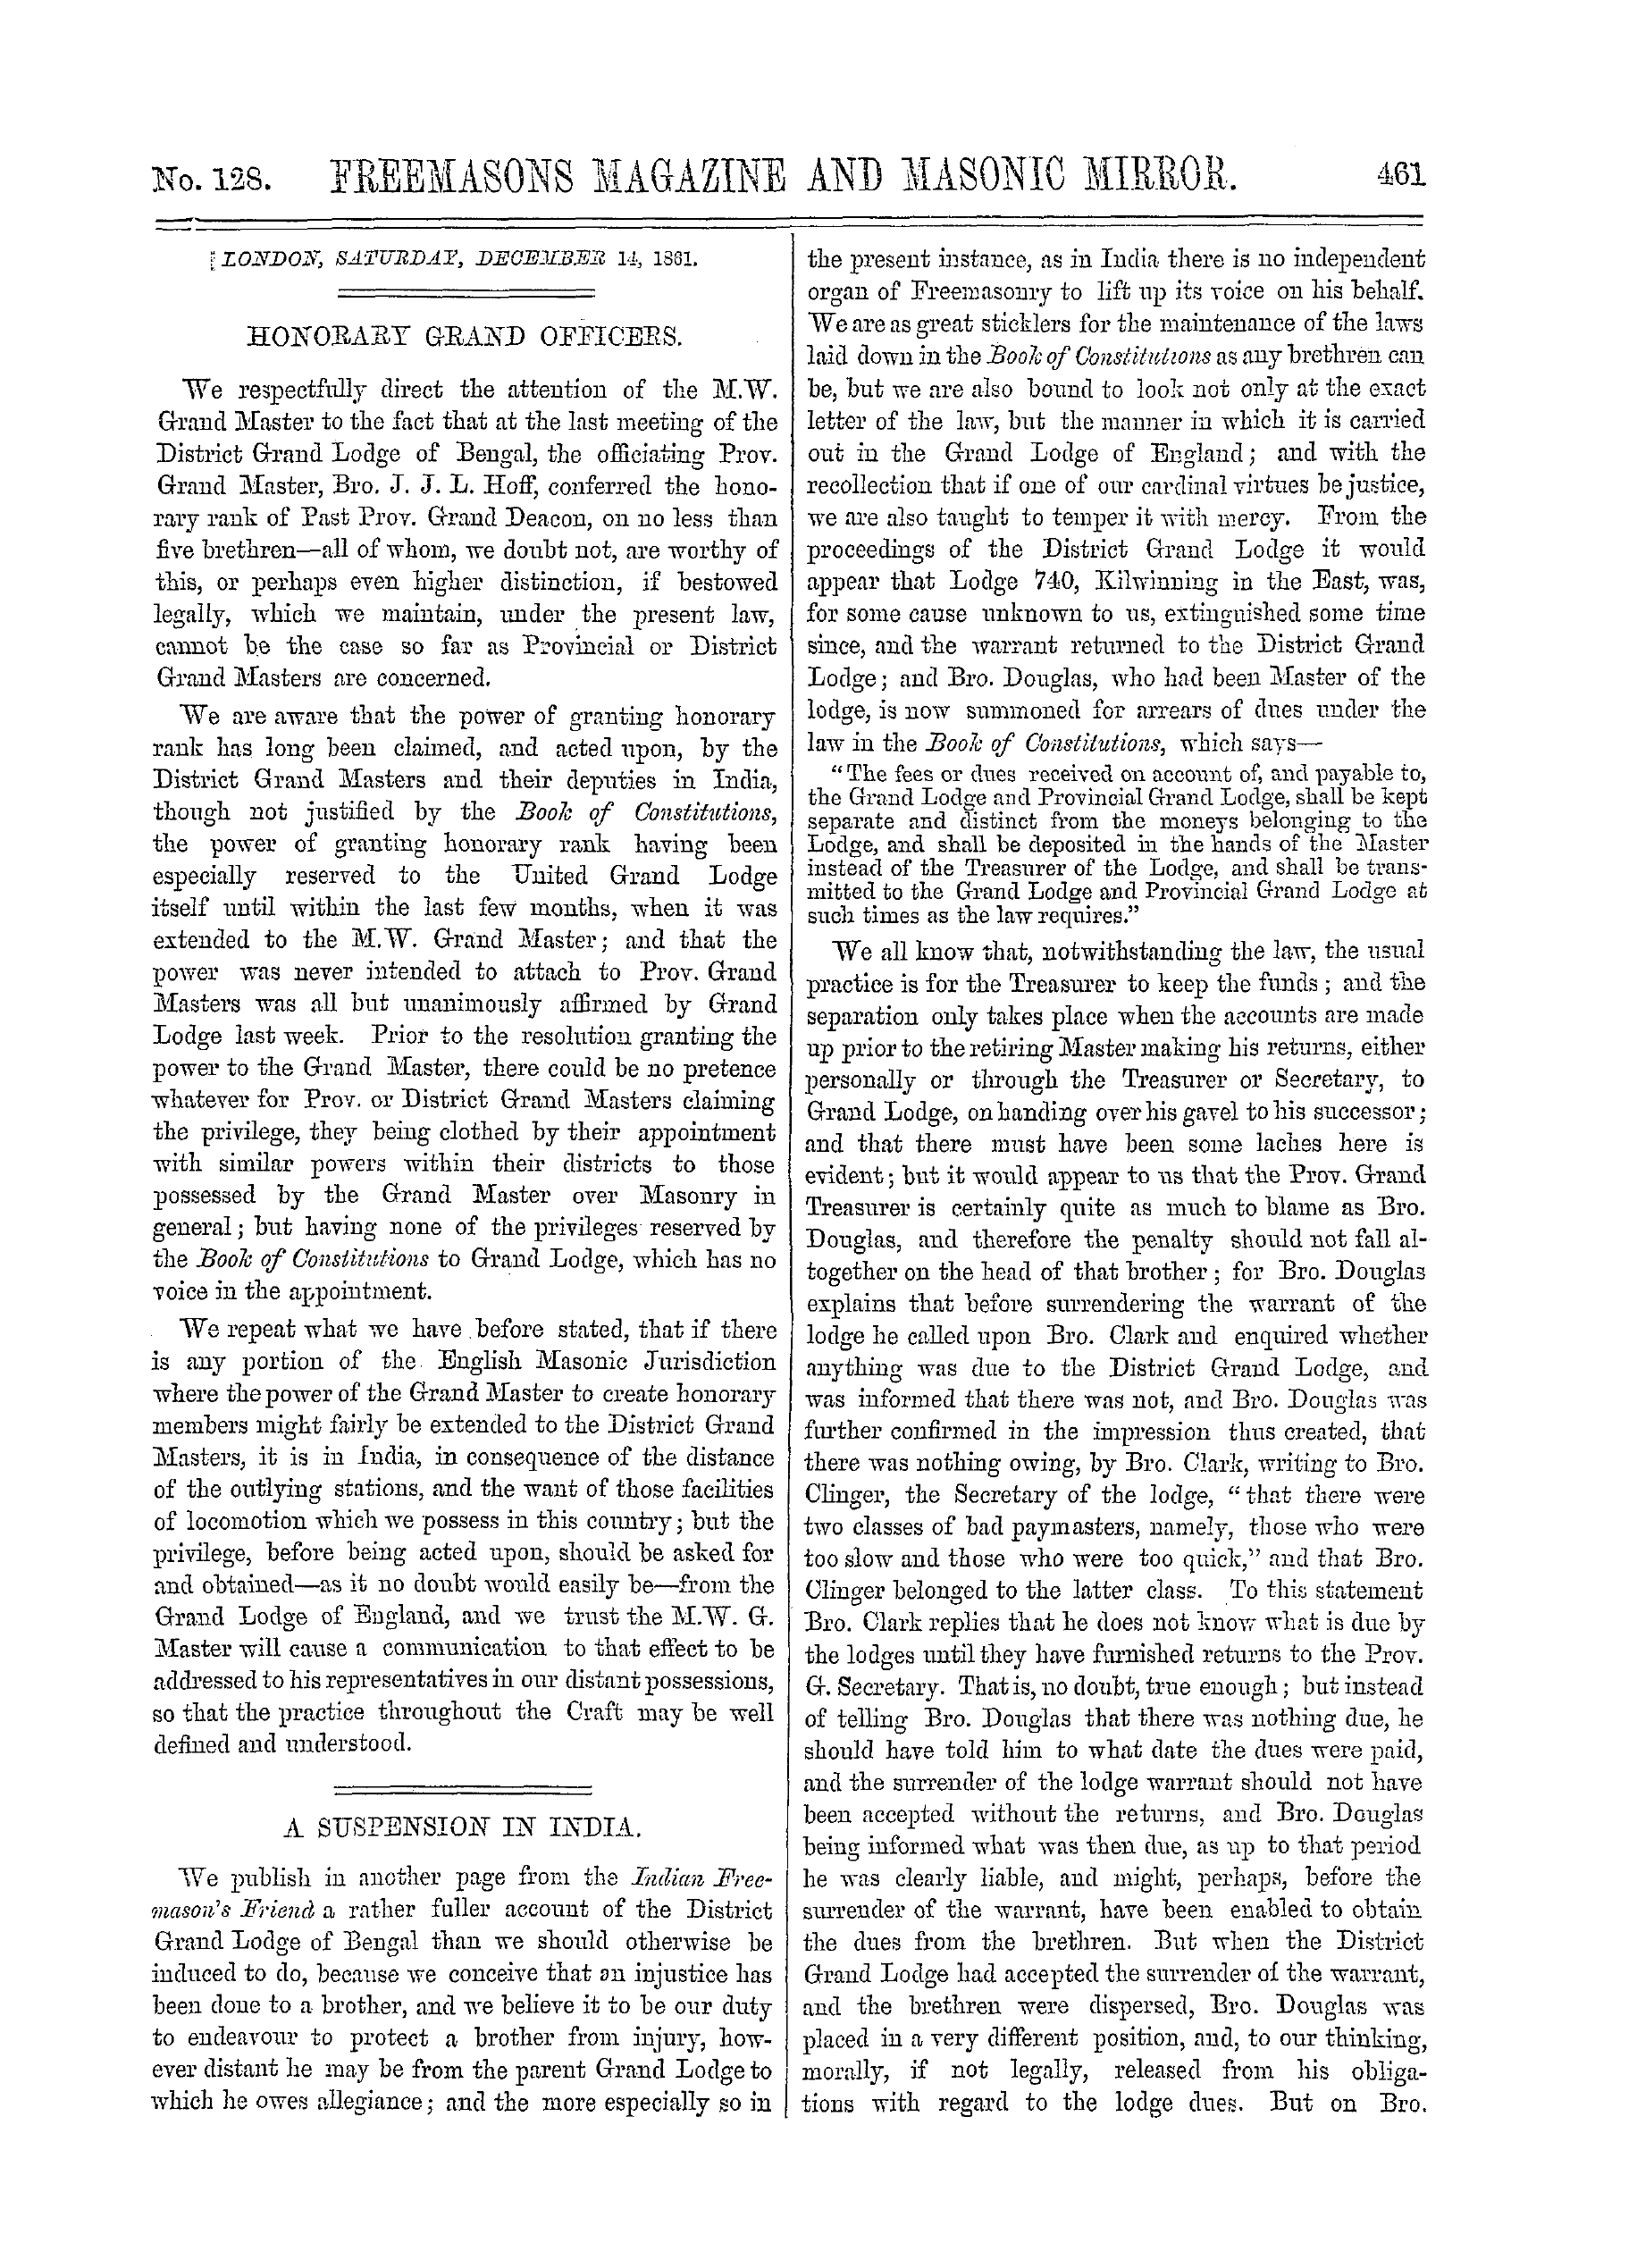 The Freemasons' Monthly Magazine: 1861-12-14: 1